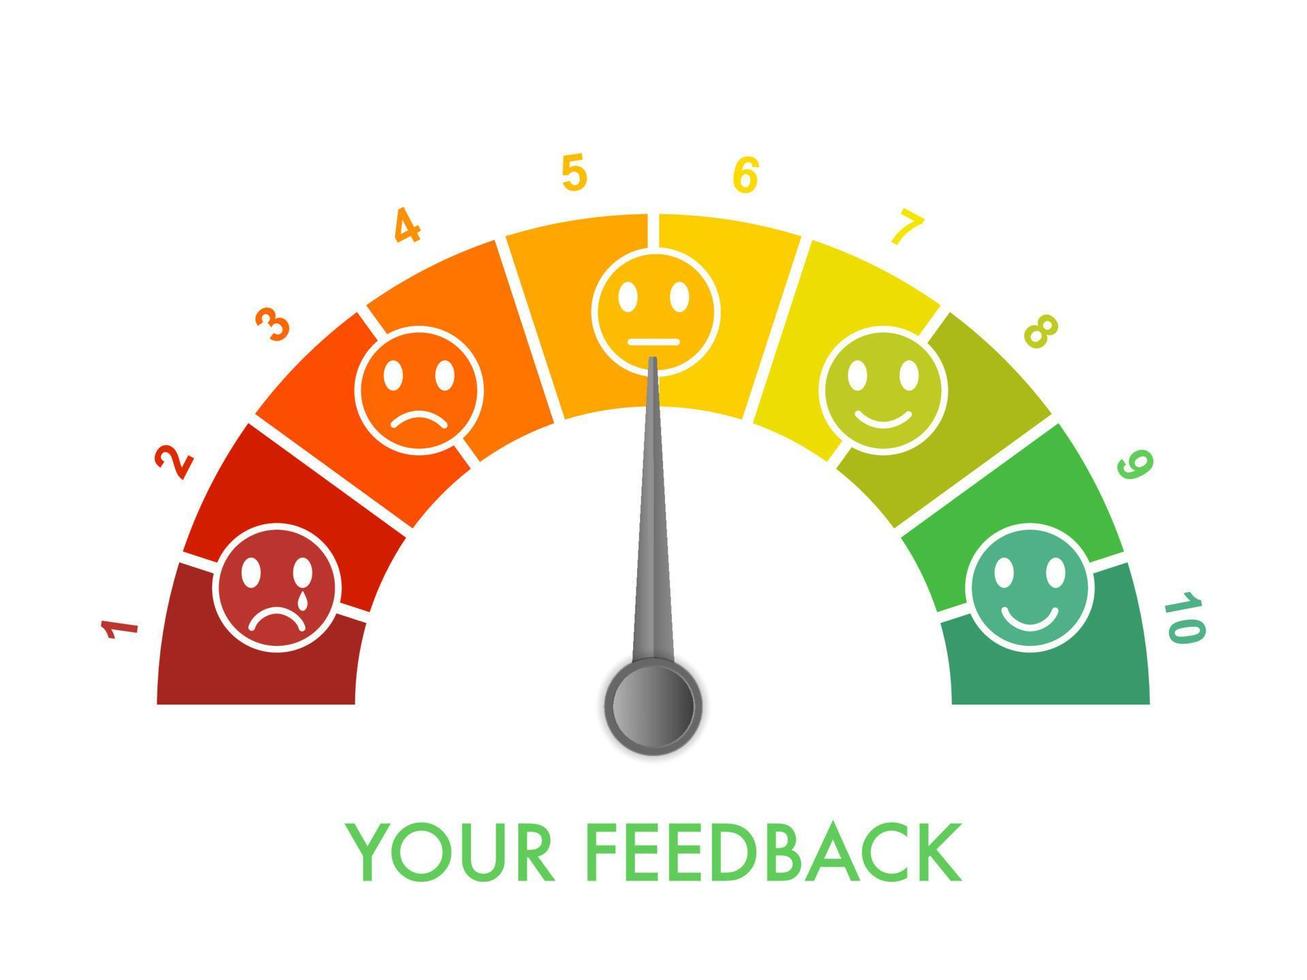 scala di misurazione del feedback dei clienti da 0 a 10, da cattivo a ottimo. strumento di gestione della valutazione. il grafico ad arco indica la soddisfazione del cliente. clipart di illustrazione vettoriale